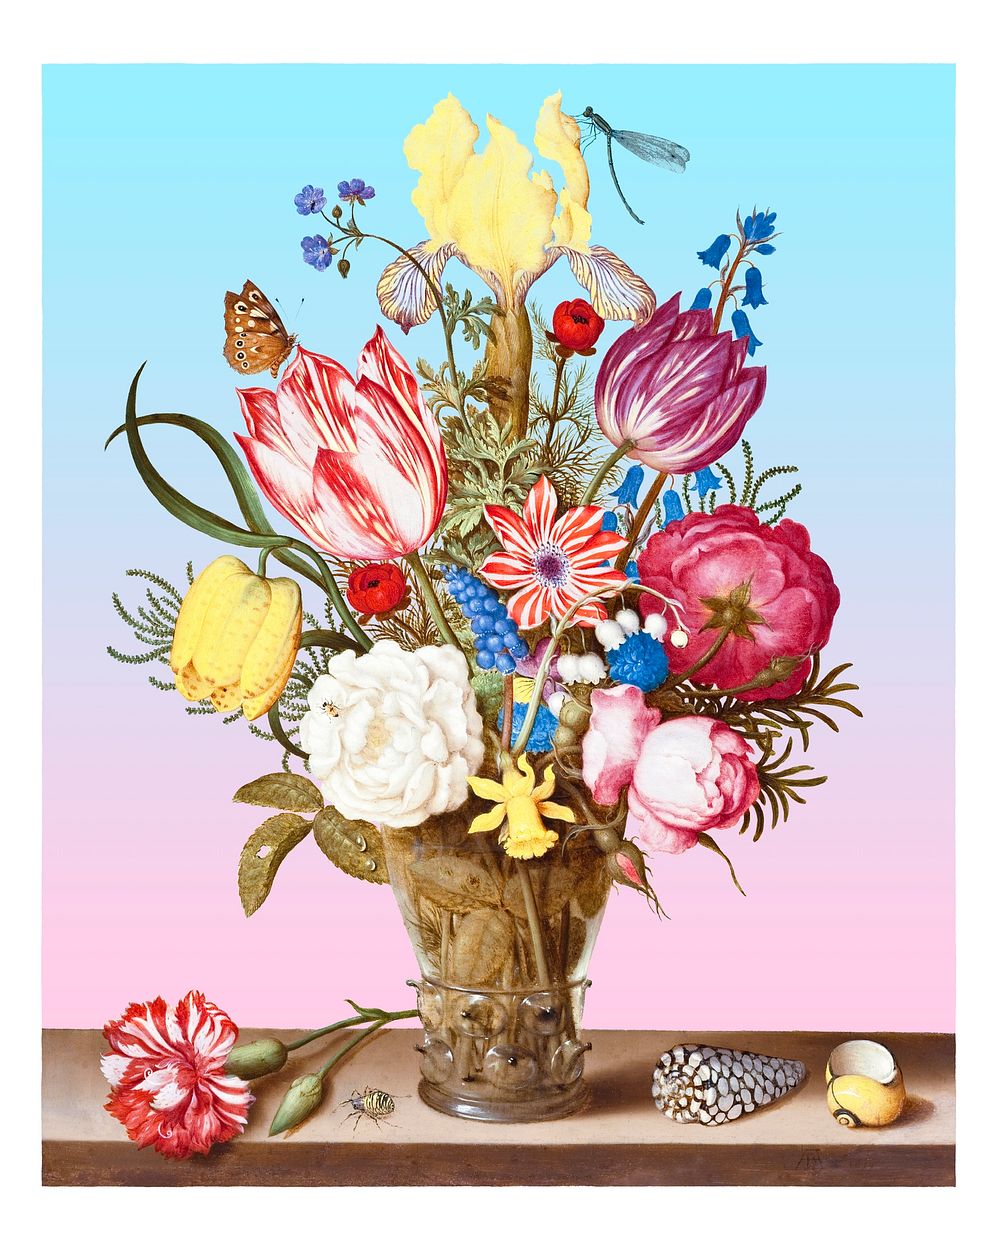 Flower bouquet art print, vintage wall decor, enhanced from the artwork of Ambrosius Bosschaert